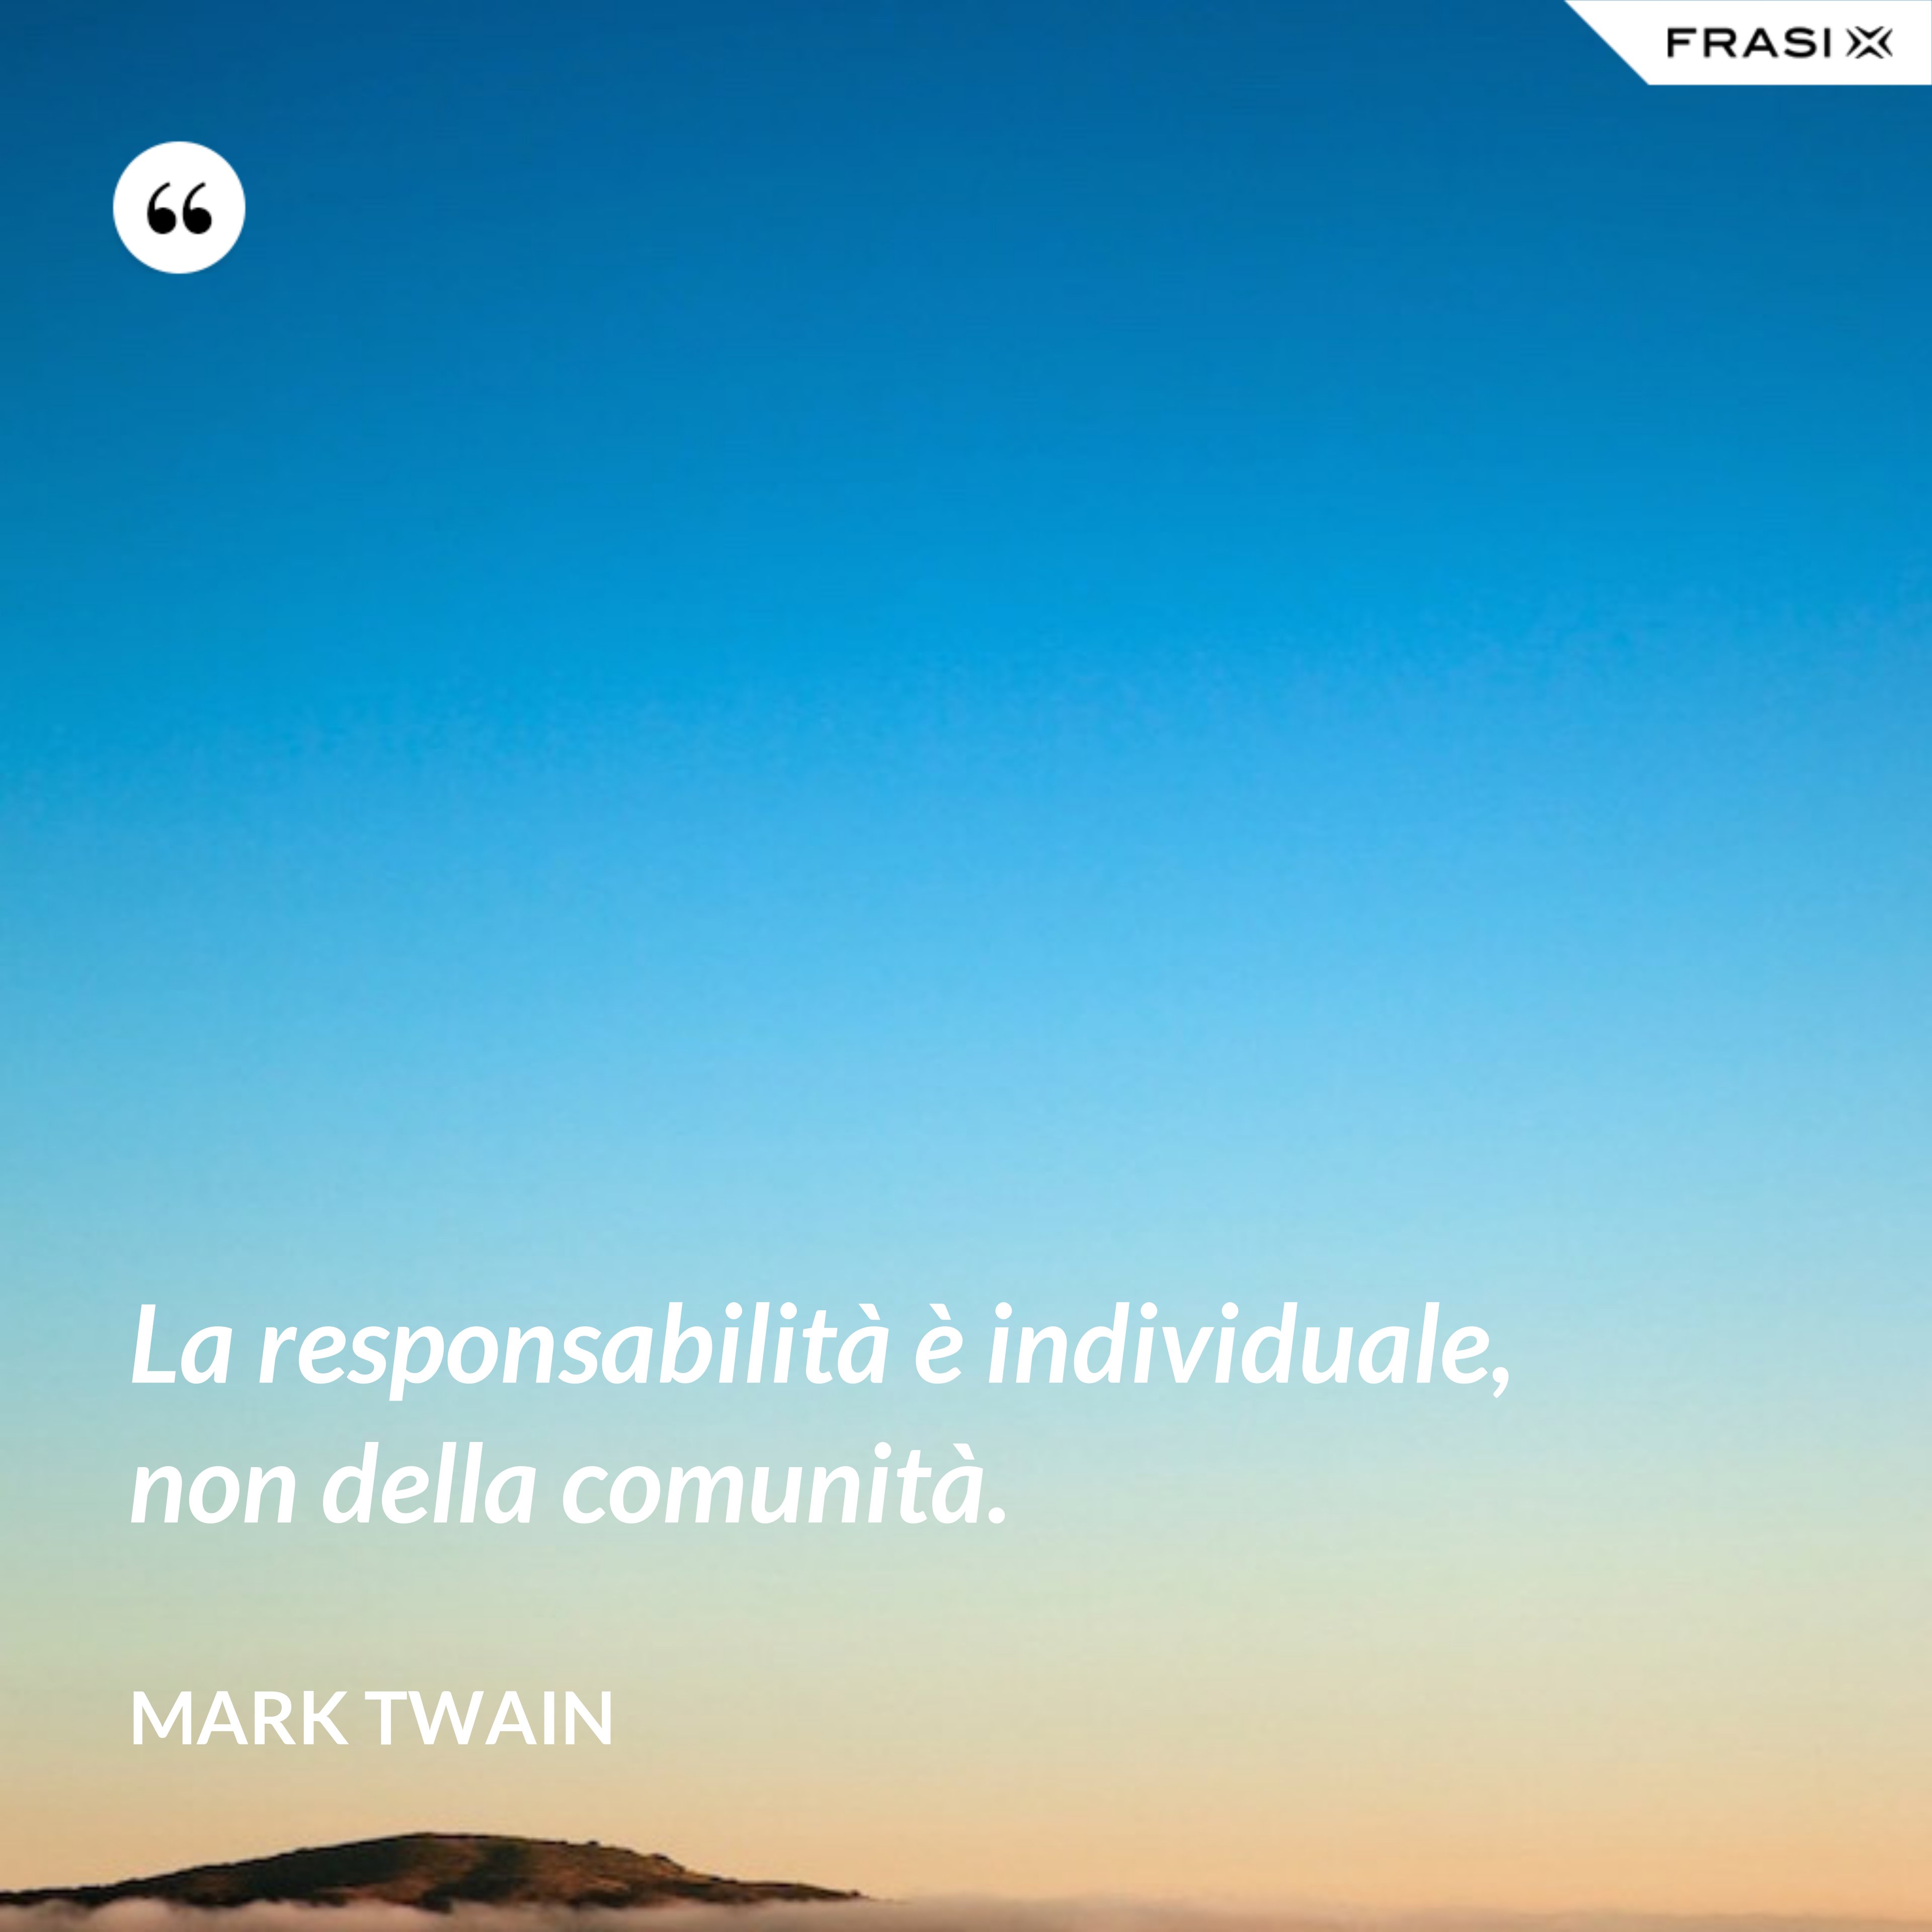 La responsabilità è individuale, non della comunità. - Mark Twain